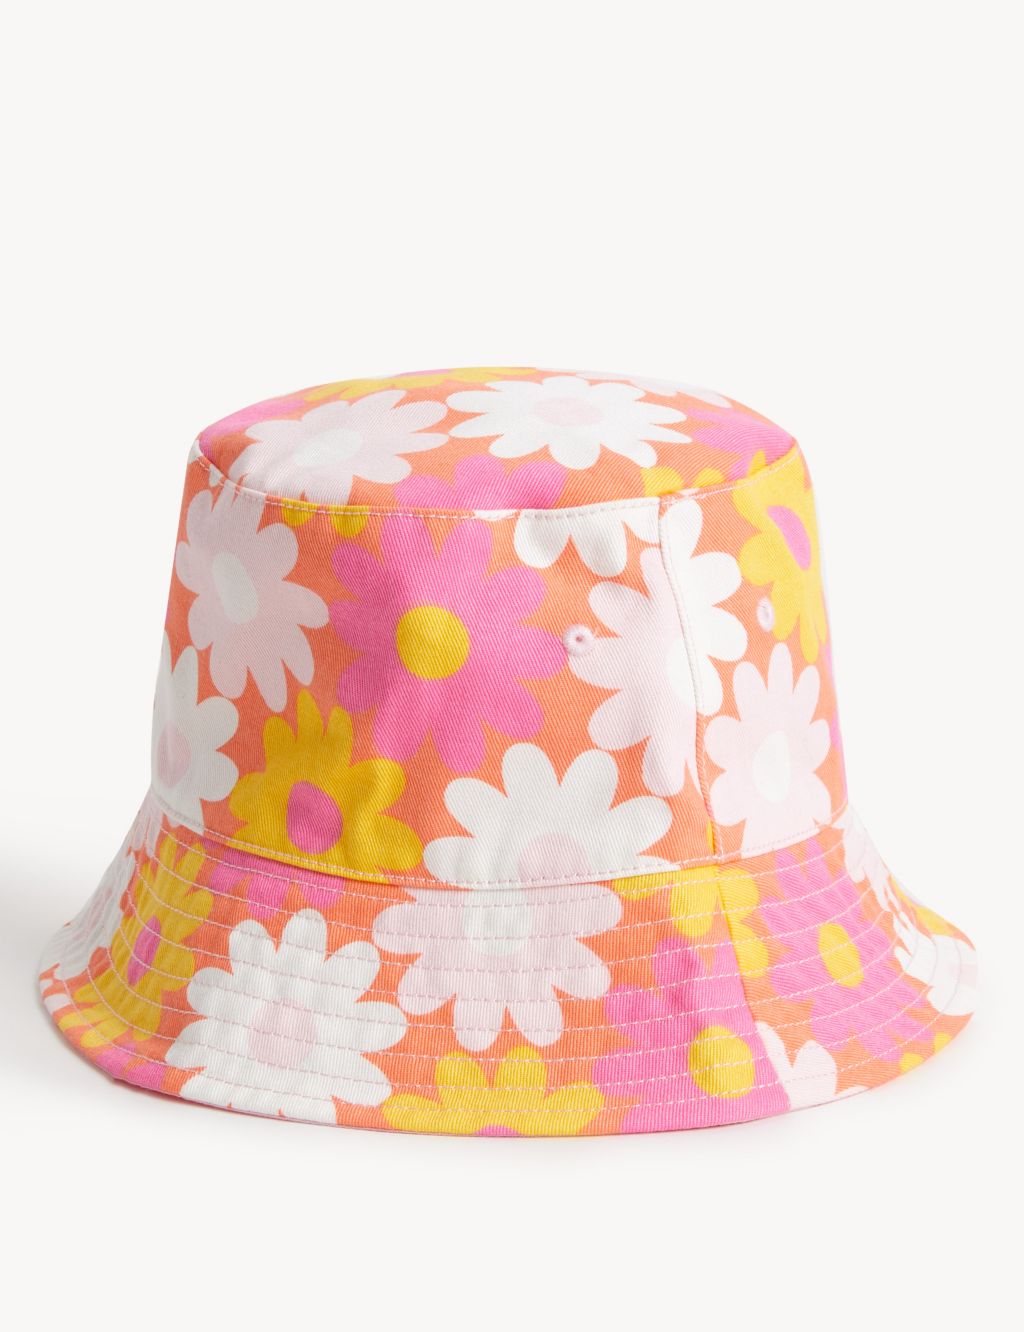 Kids' Pure Cotton Floral Sun Hat image 2